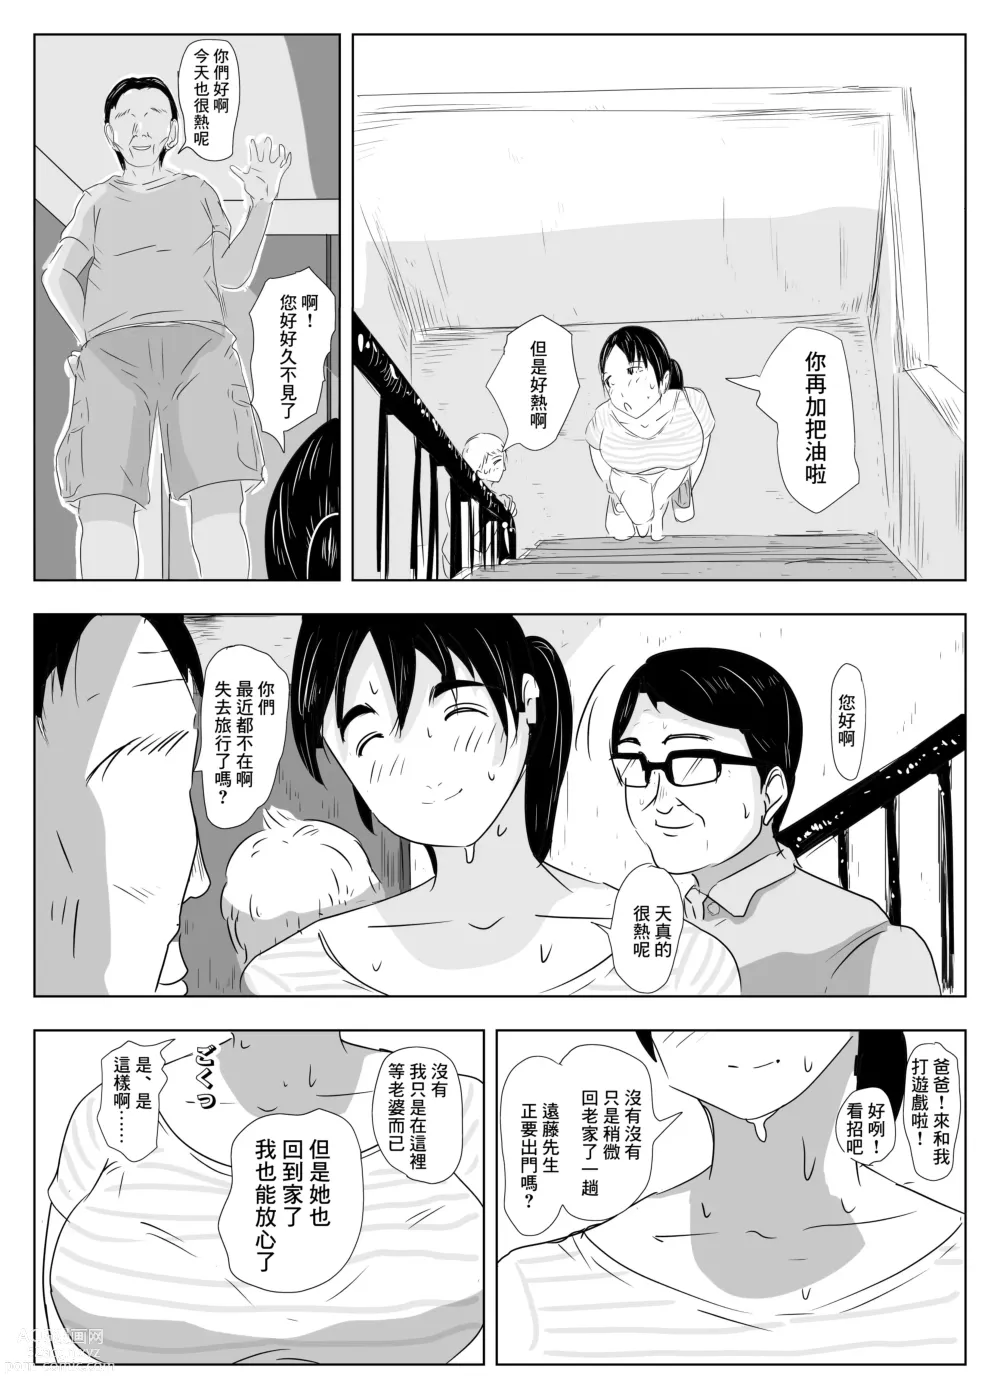 Page 49 of doujinshi NOSTALGIC